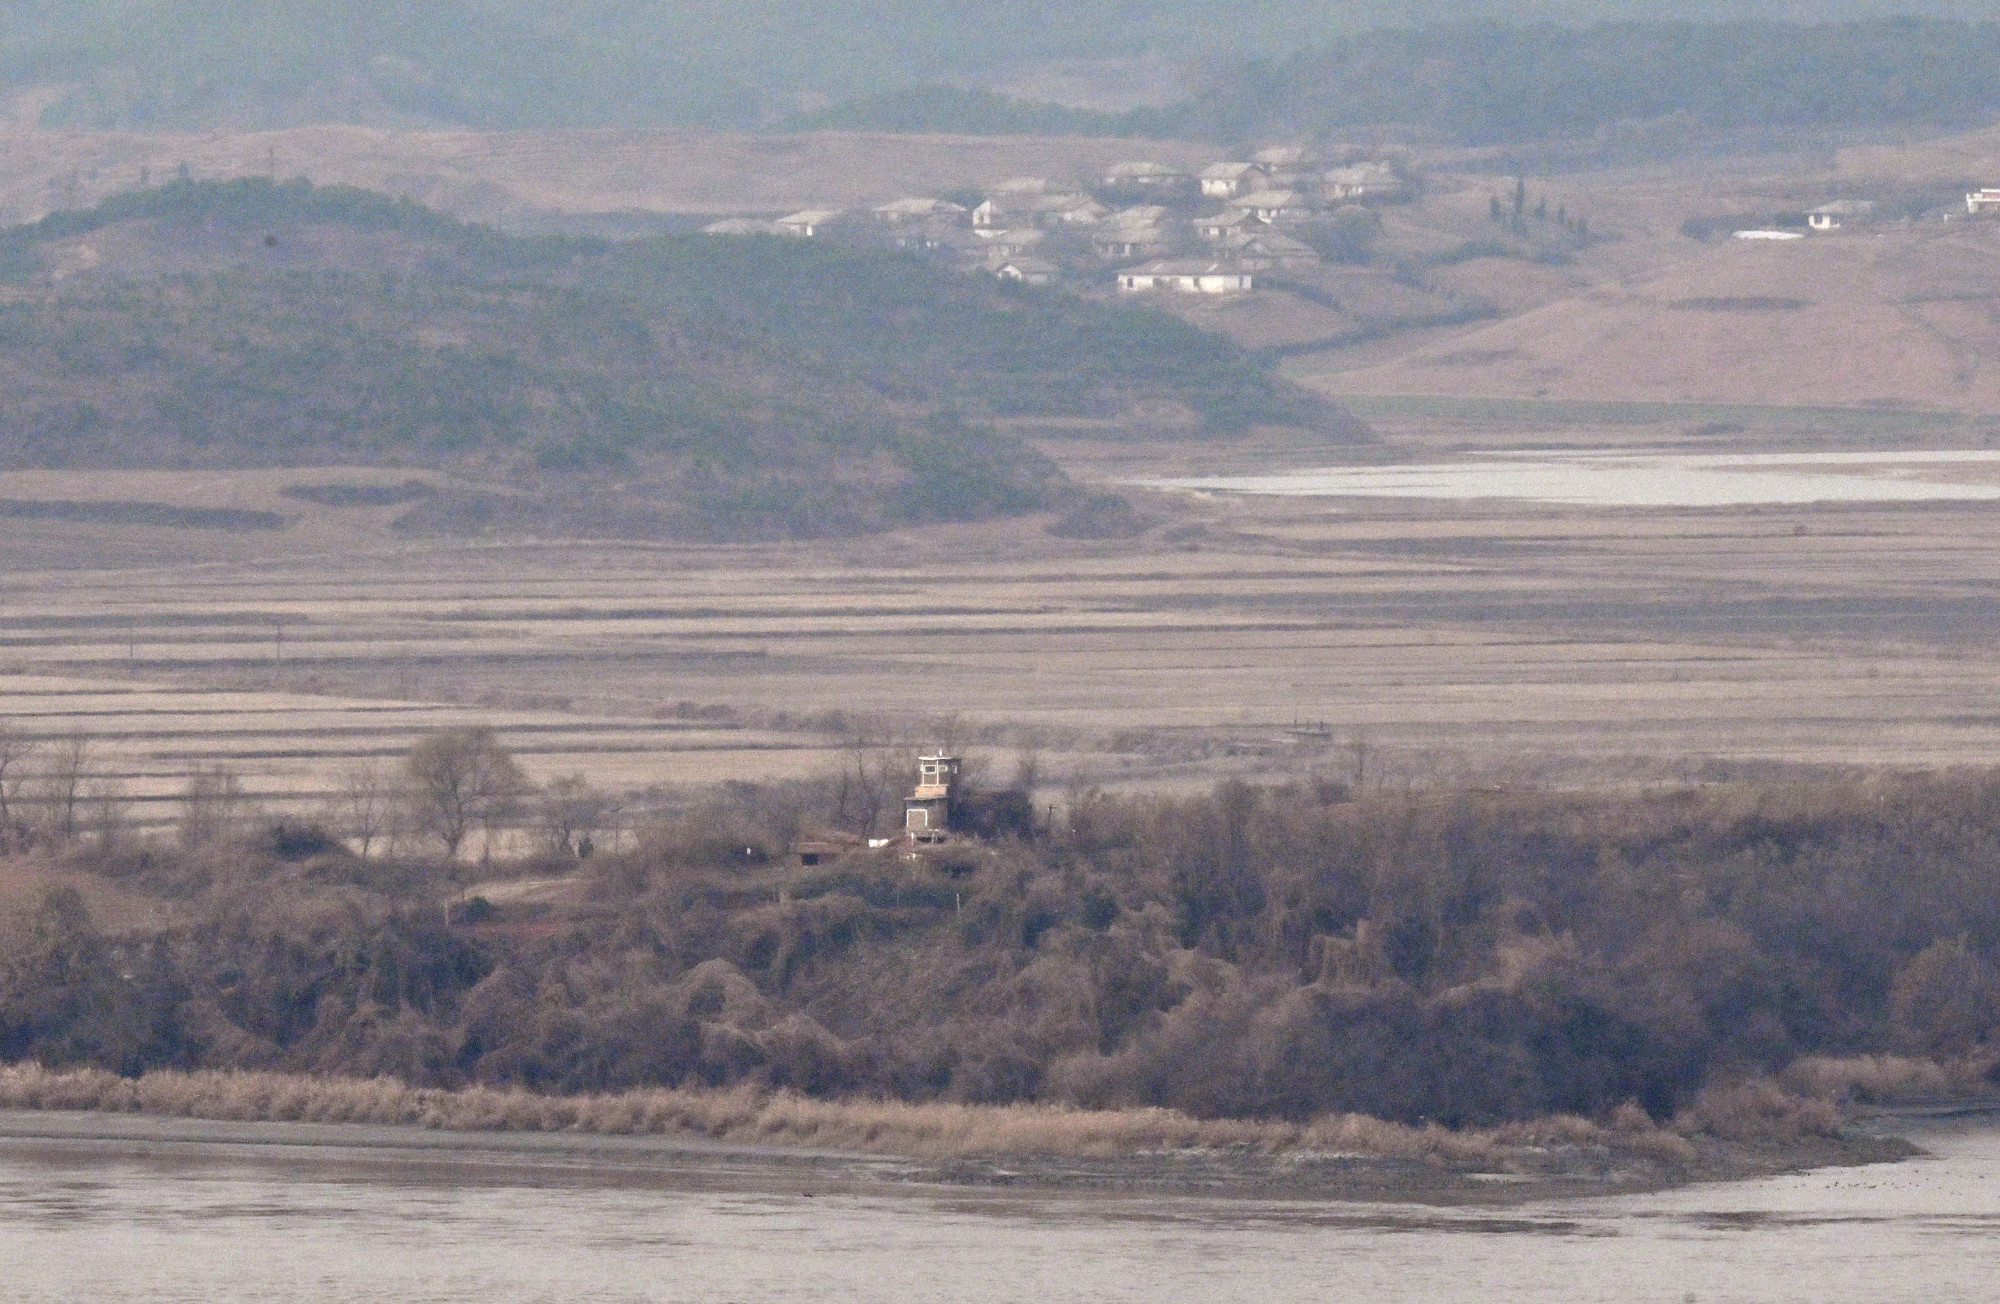 Észak-koreai katonák lépték át a dél-koreai határt